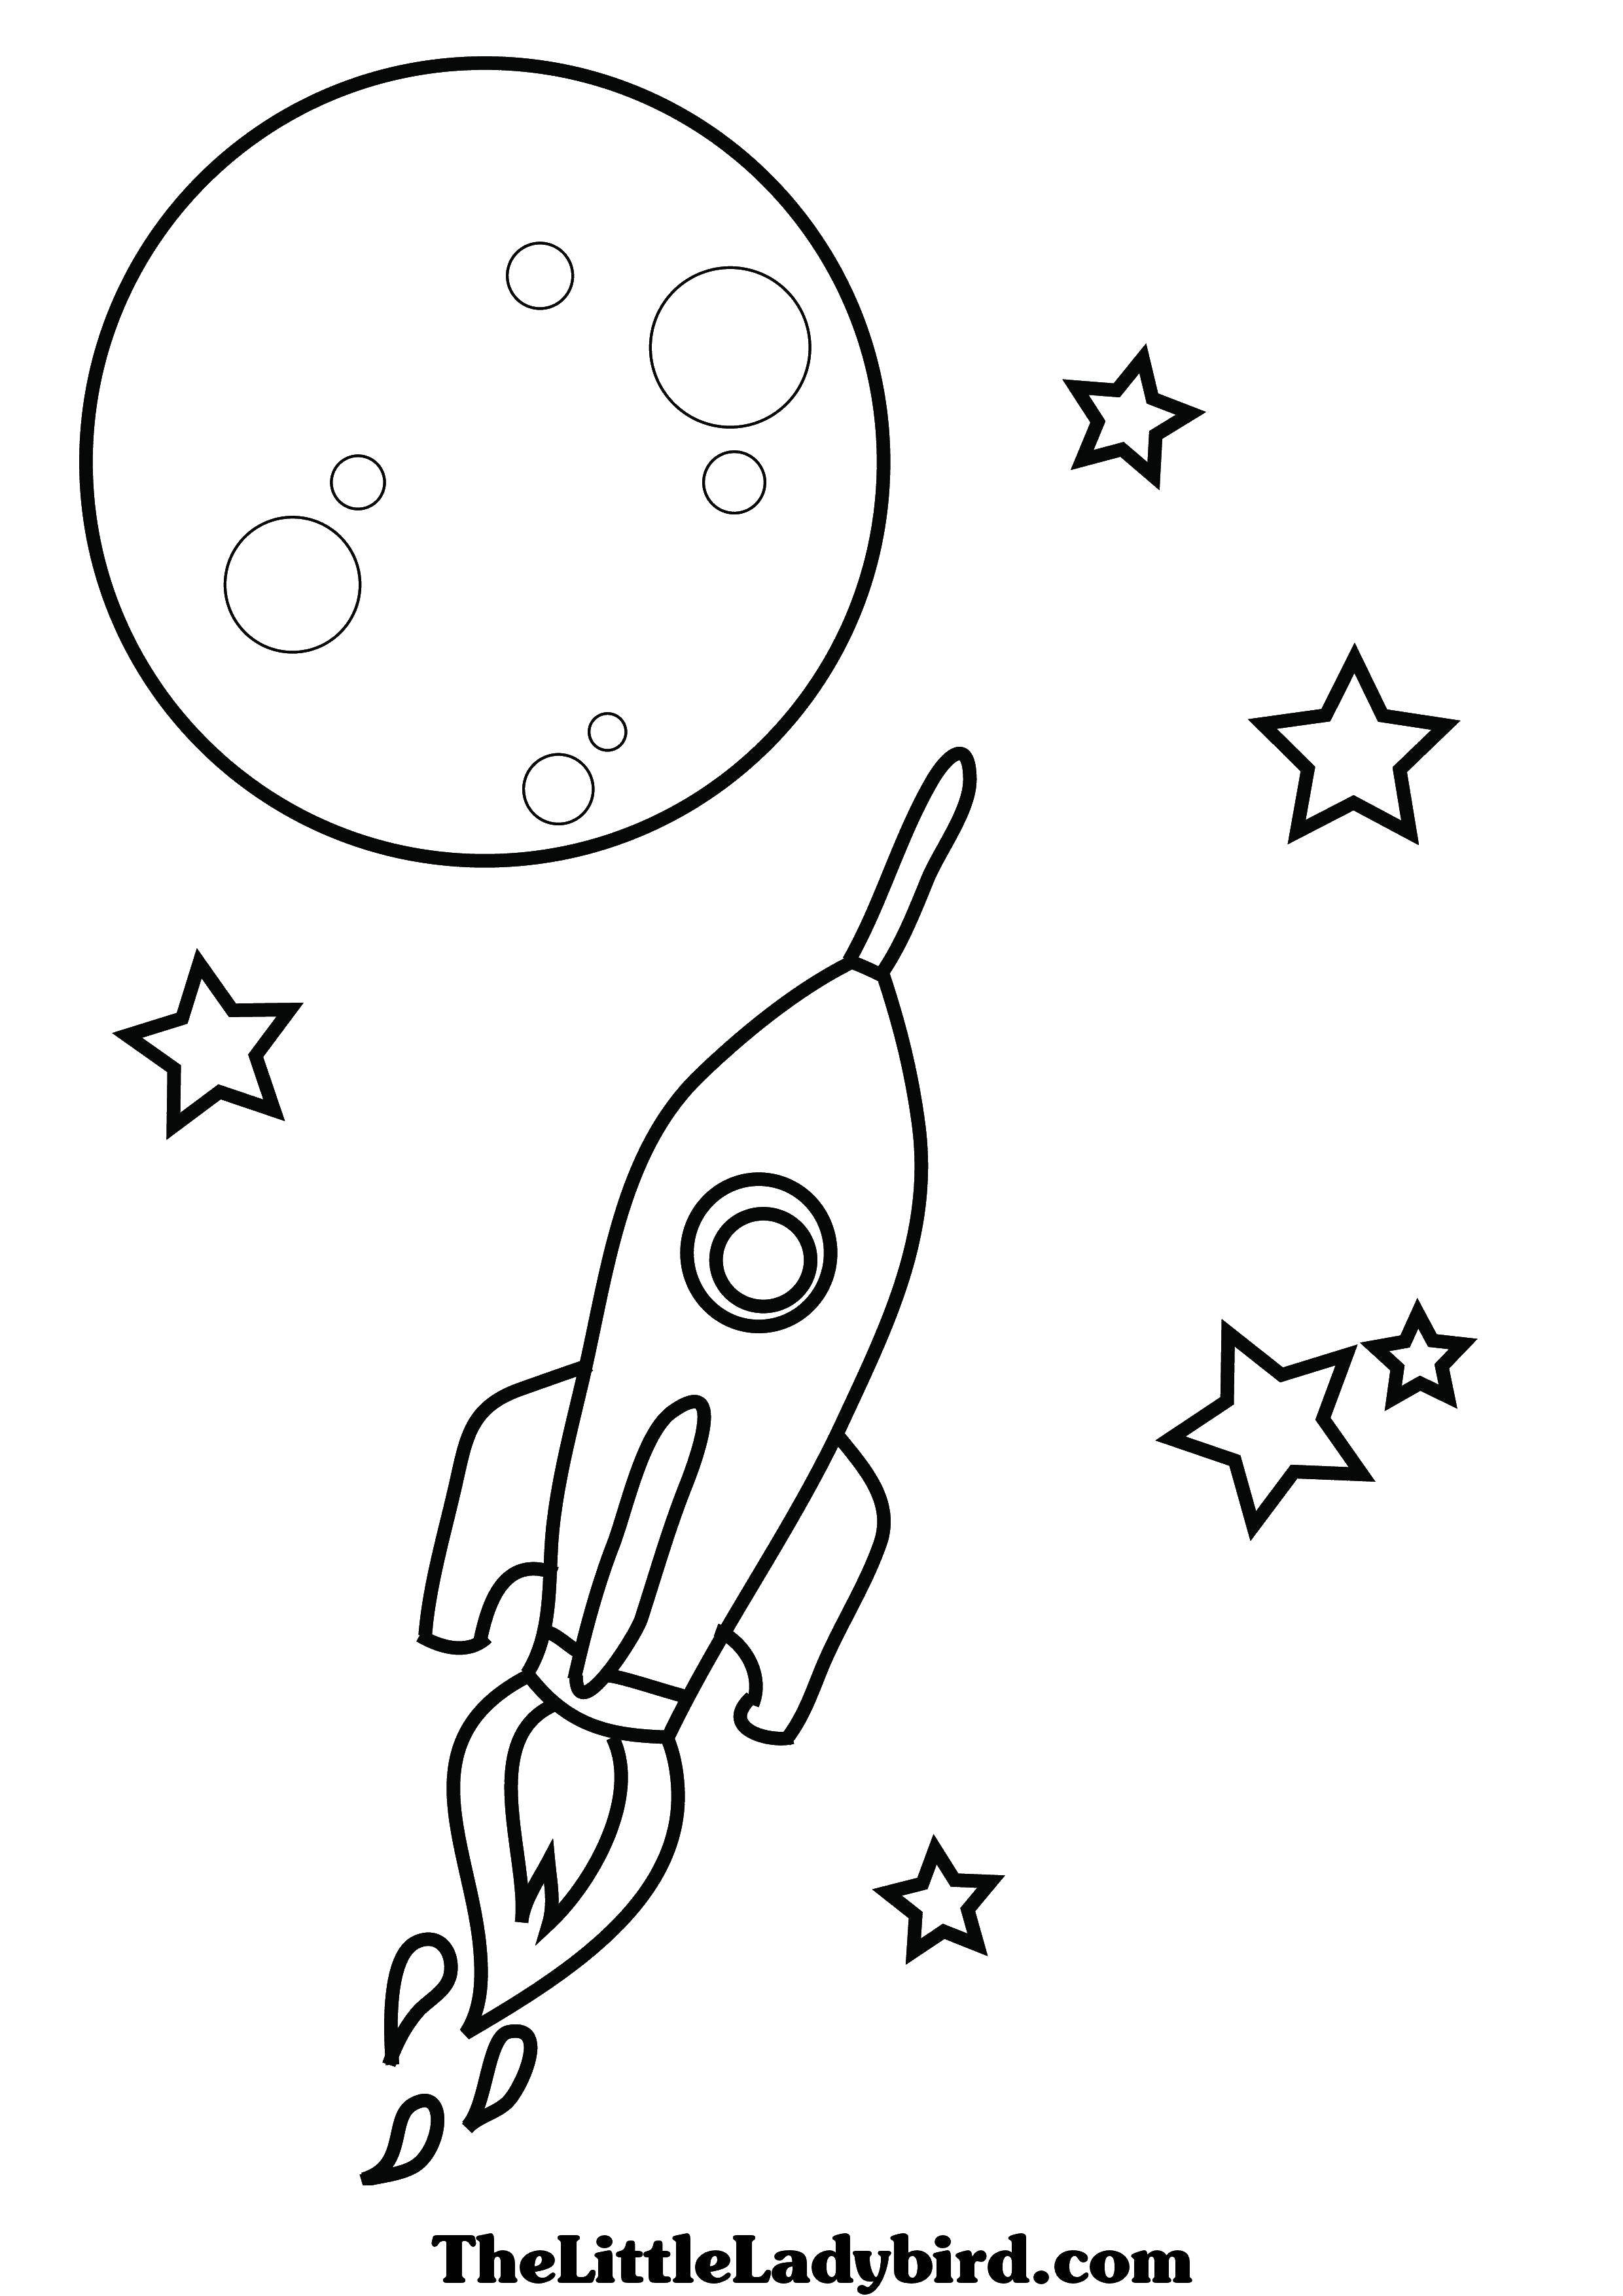 Раскраски к дню космонавтики для детей распечатать. Ракета раскраска. Космос раскраска для детей. Ракета раскраска для детей. Раскраска для малышей. Космос.